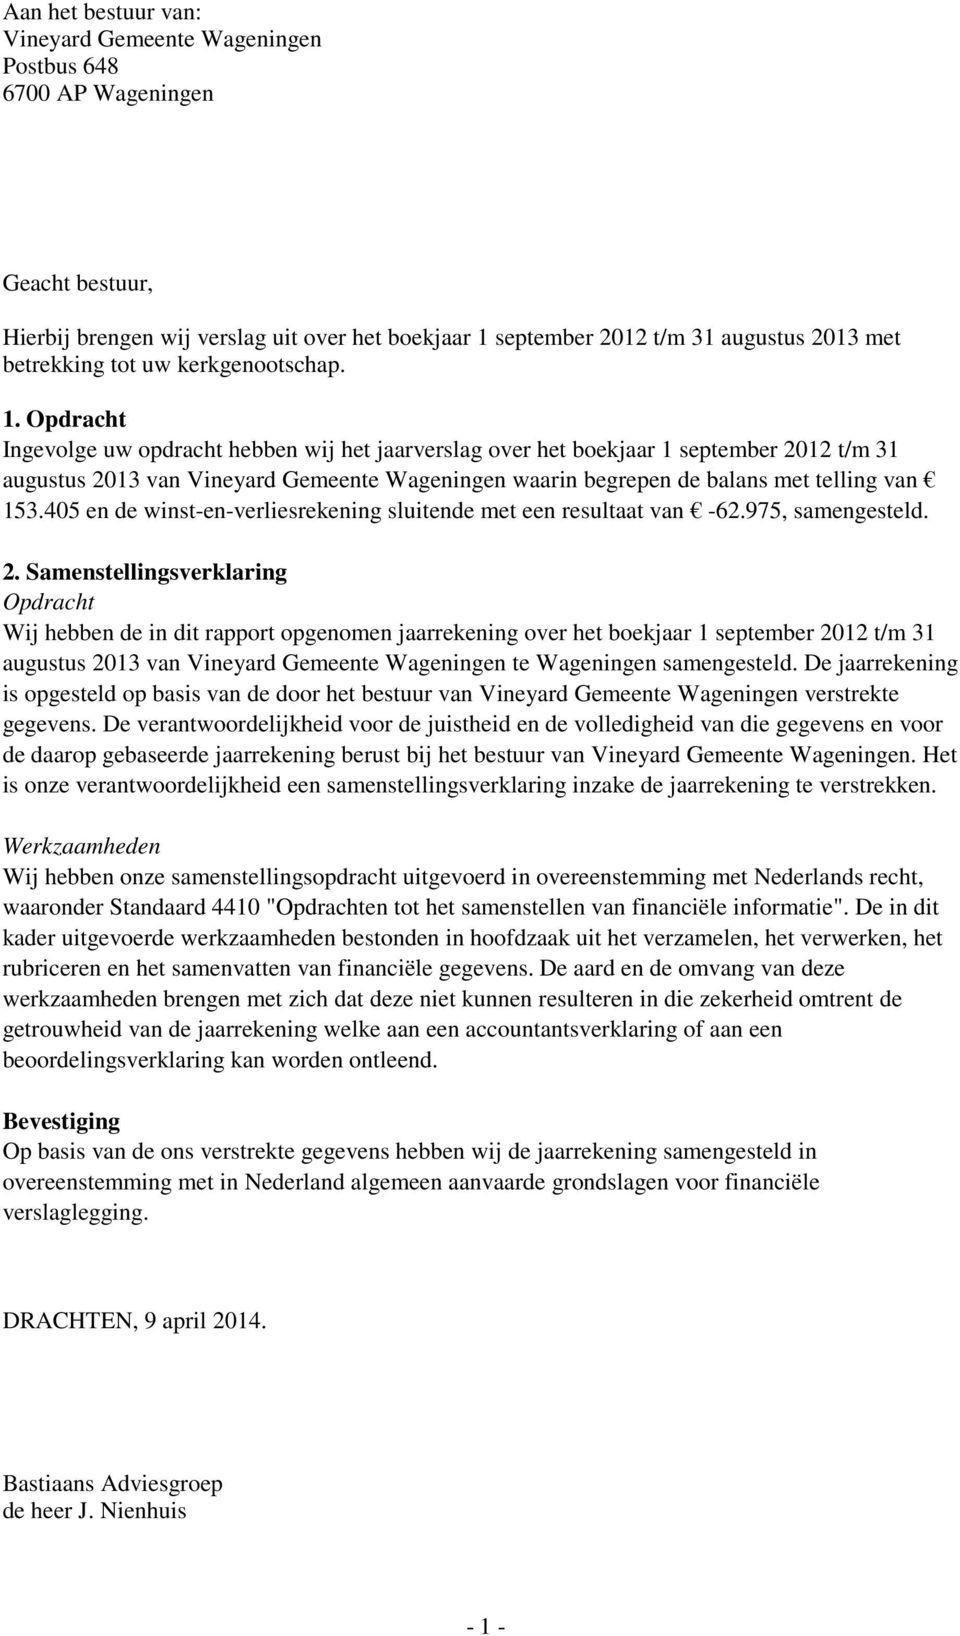 Opdracht Ingevolge uw opdracht hebben wij het jaarverslag over het boekjaar 1 september 2012 t/m 31 augustus 2013 van Vineyard Gemeente Wageningen waarin begrepen de balans met telling van 153.